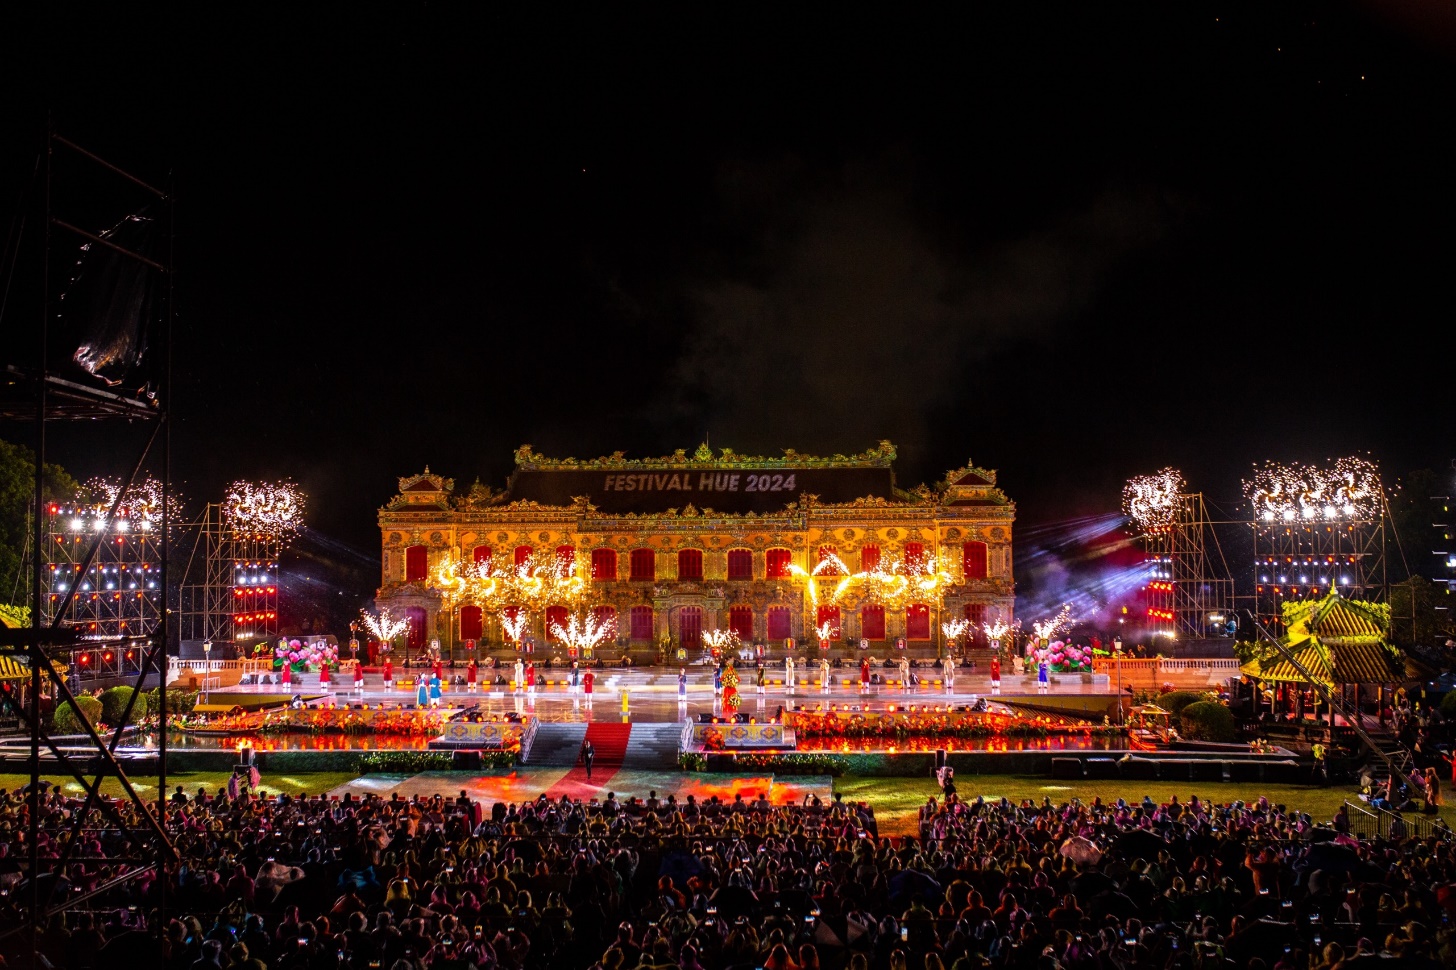 Chiêm ngưỡng cung điện triệu đô lộng lẫy trong đêm khai mạc Tuần lễ Festival Huế - 3